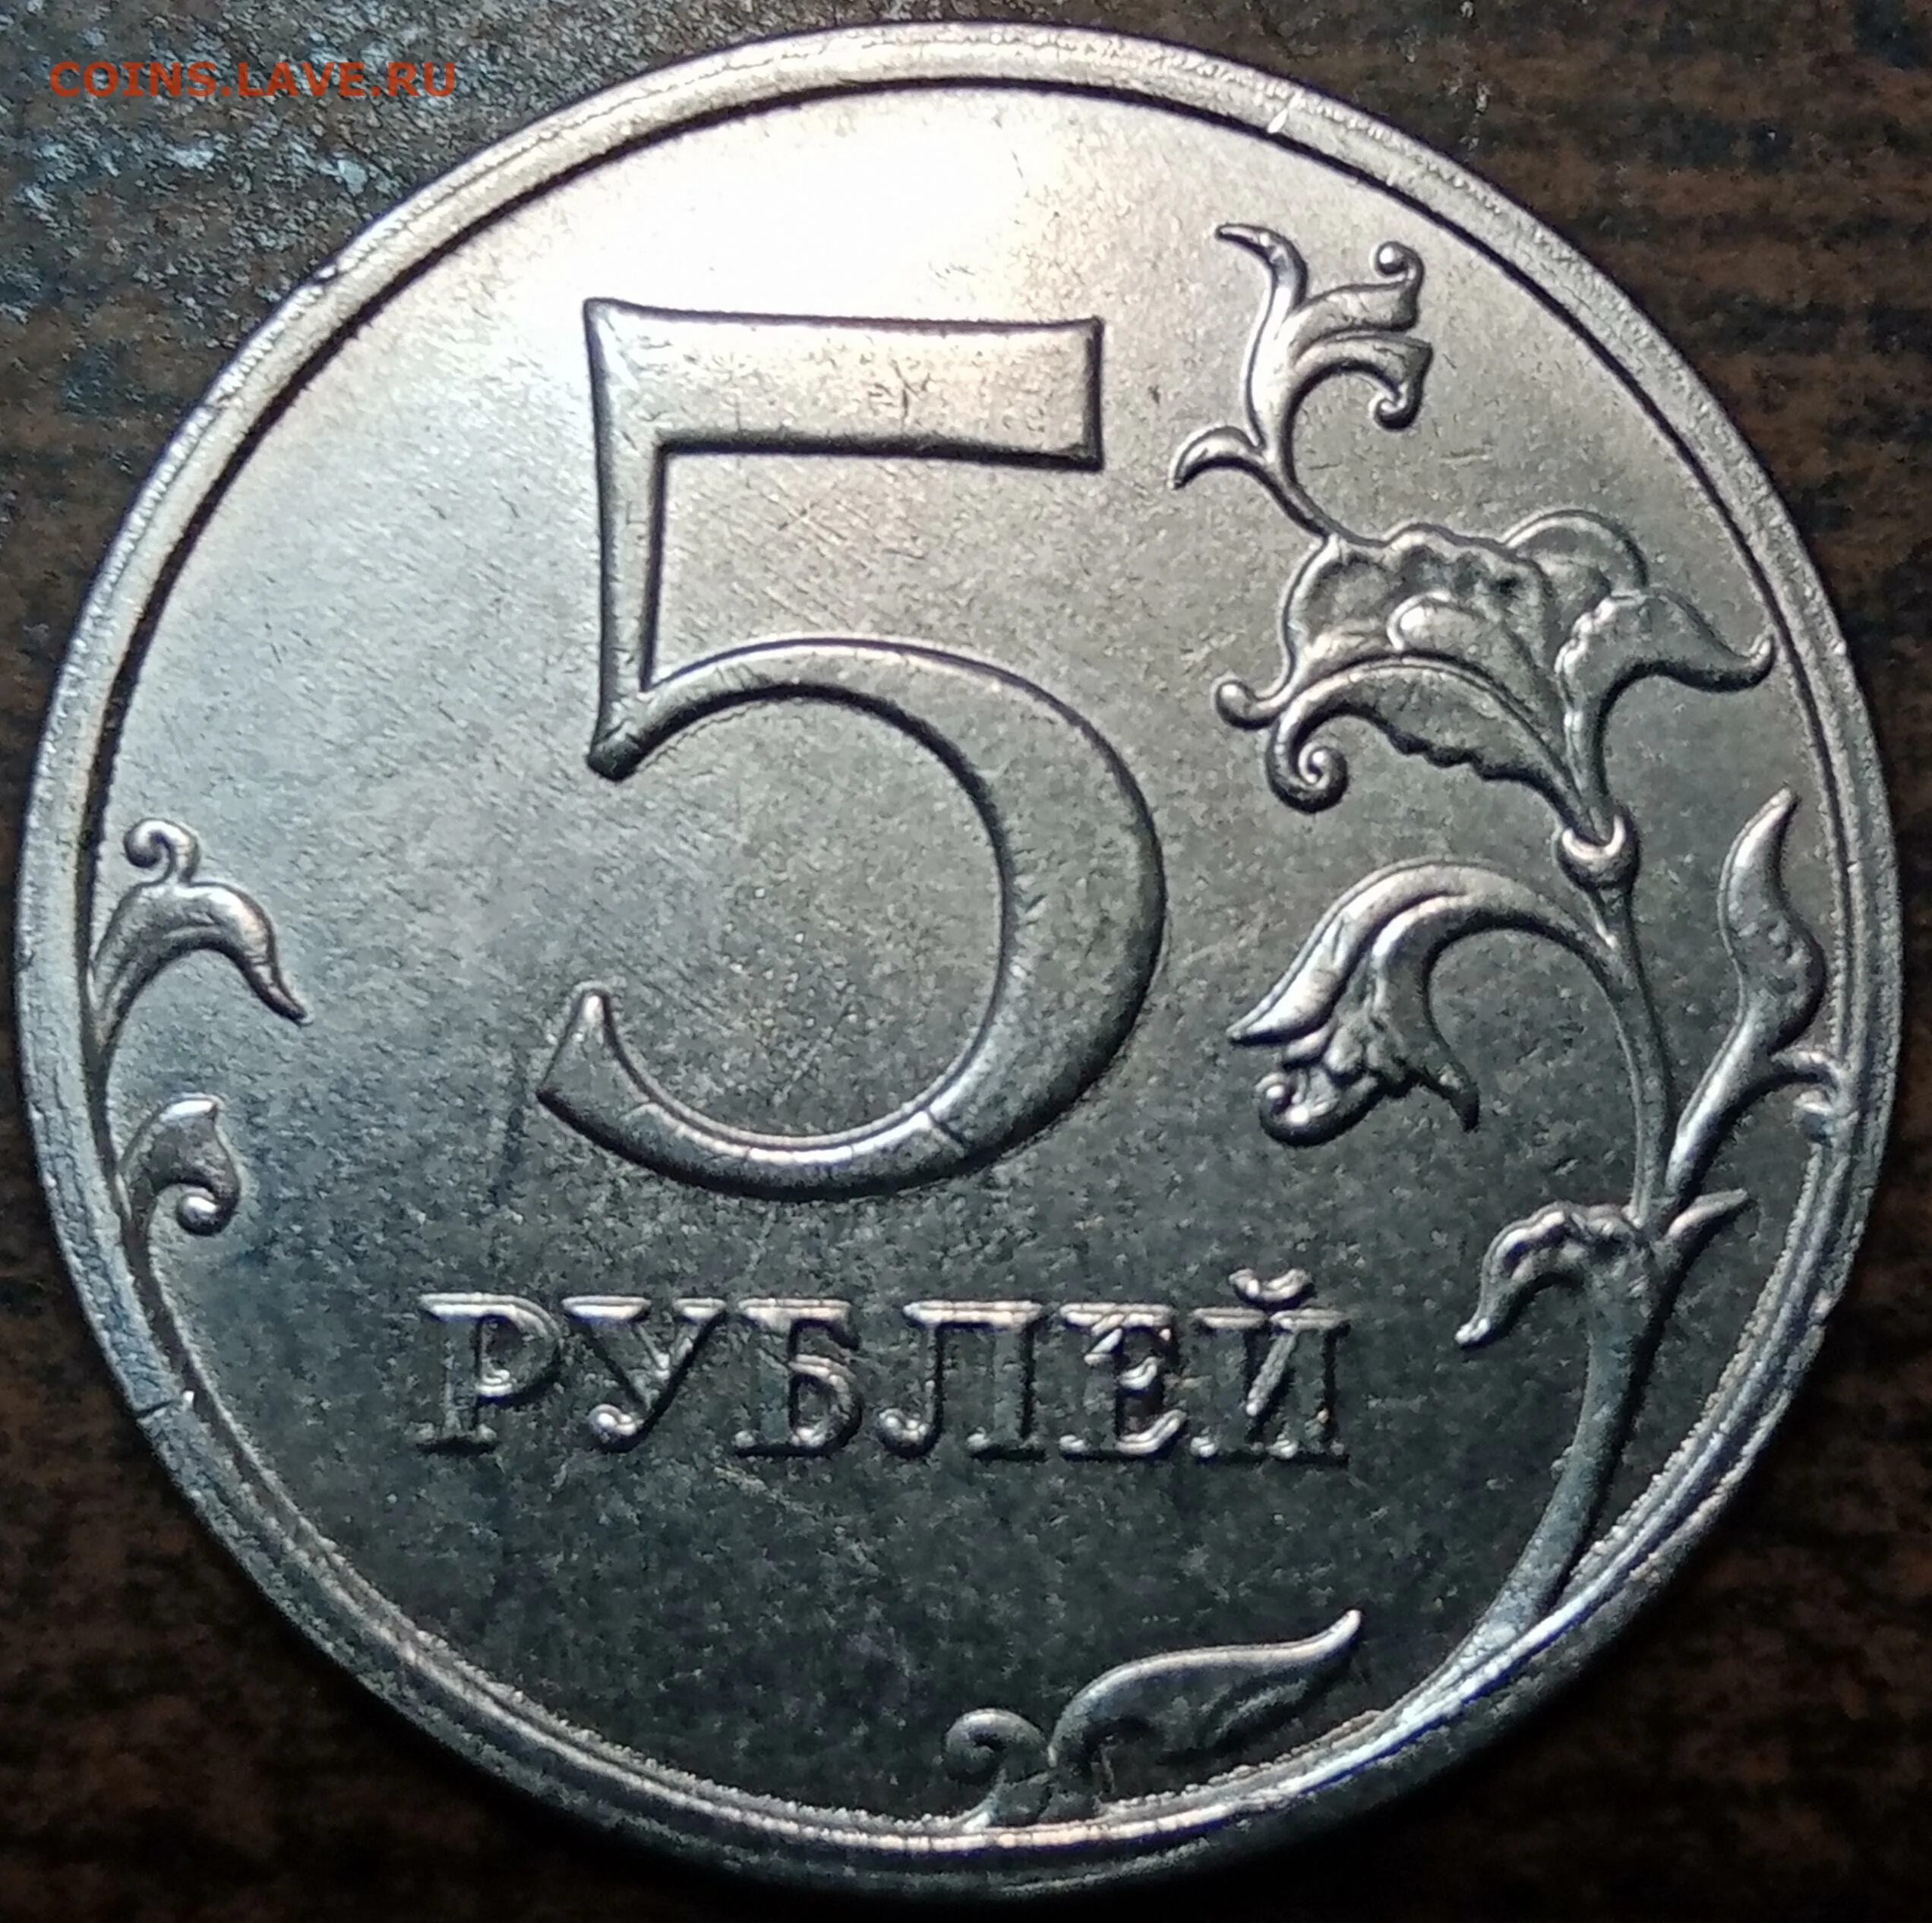 5 от 60 рублей. Монета 5 руб 2021г. Пять рублей 2021. 5 Рублей 2021. 5 Рублей 2021 года.